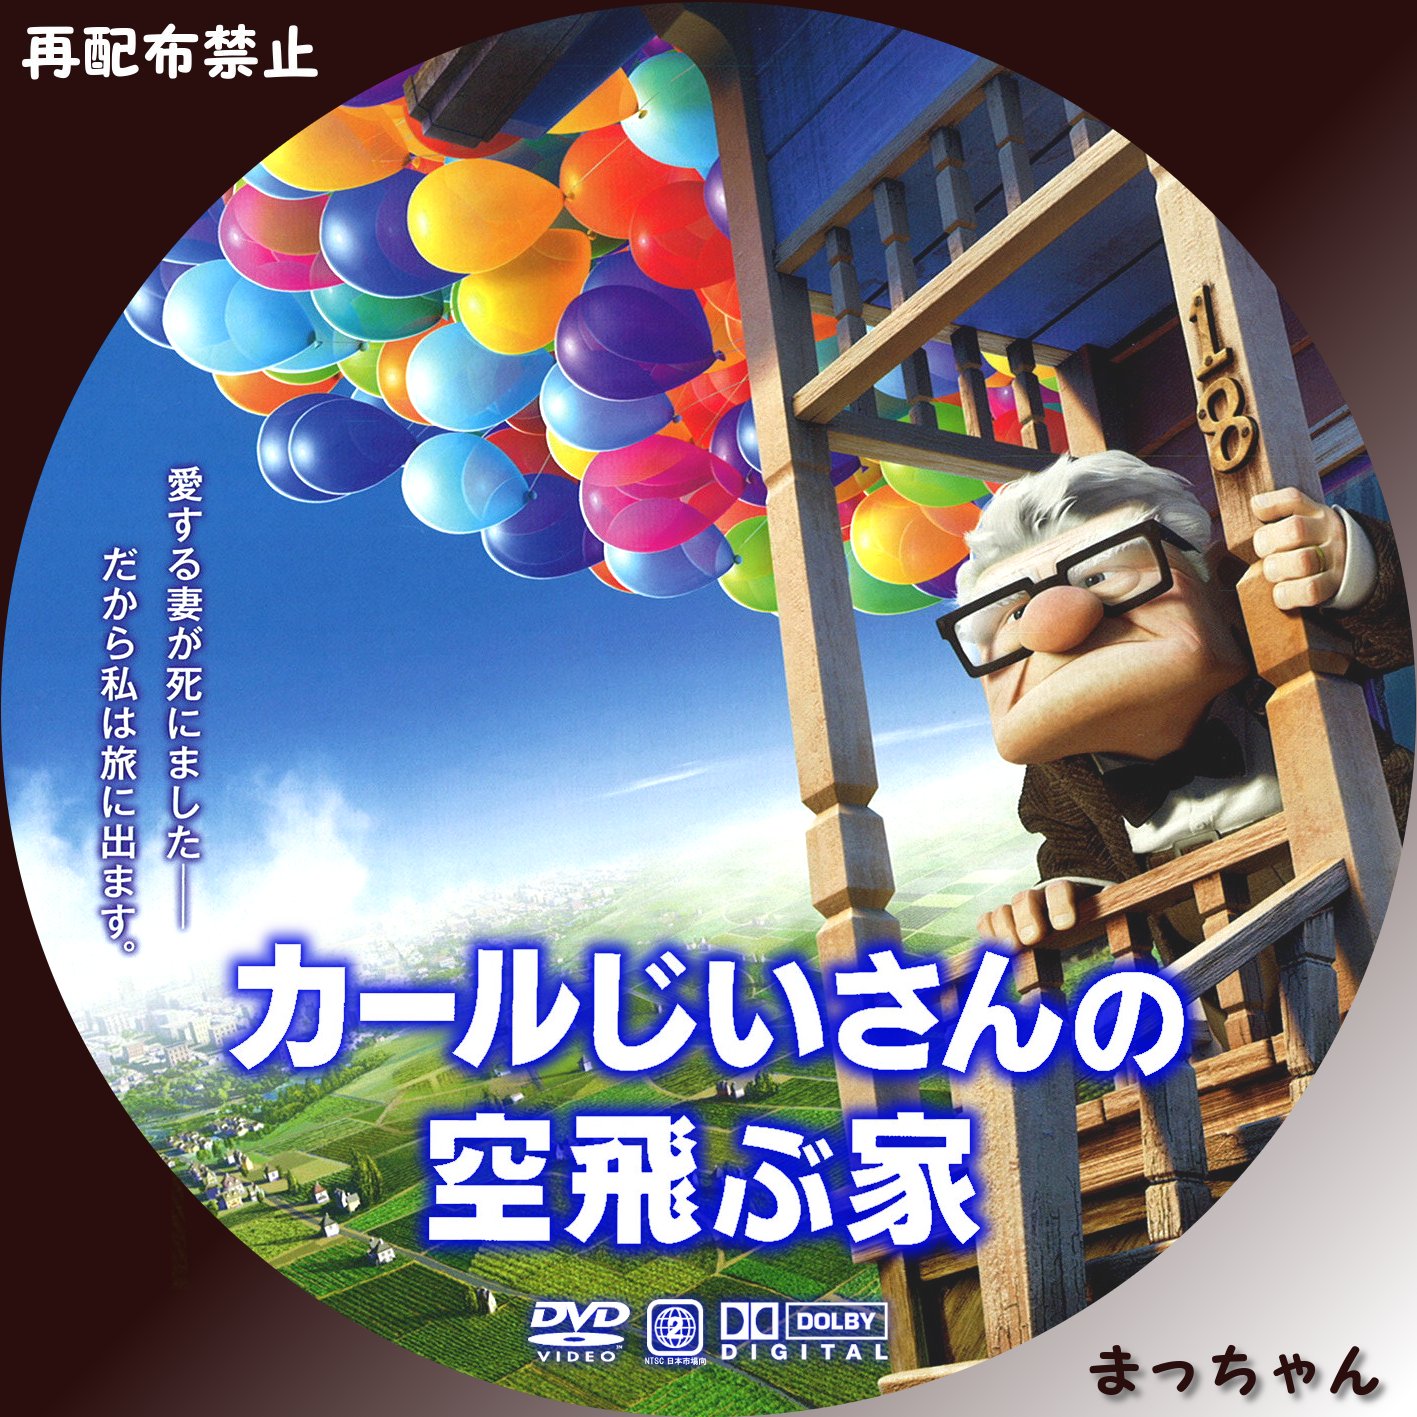 正規取扱店 カールじいさんの空飛ぶ家 '09米 DVD blog2.hix05.com